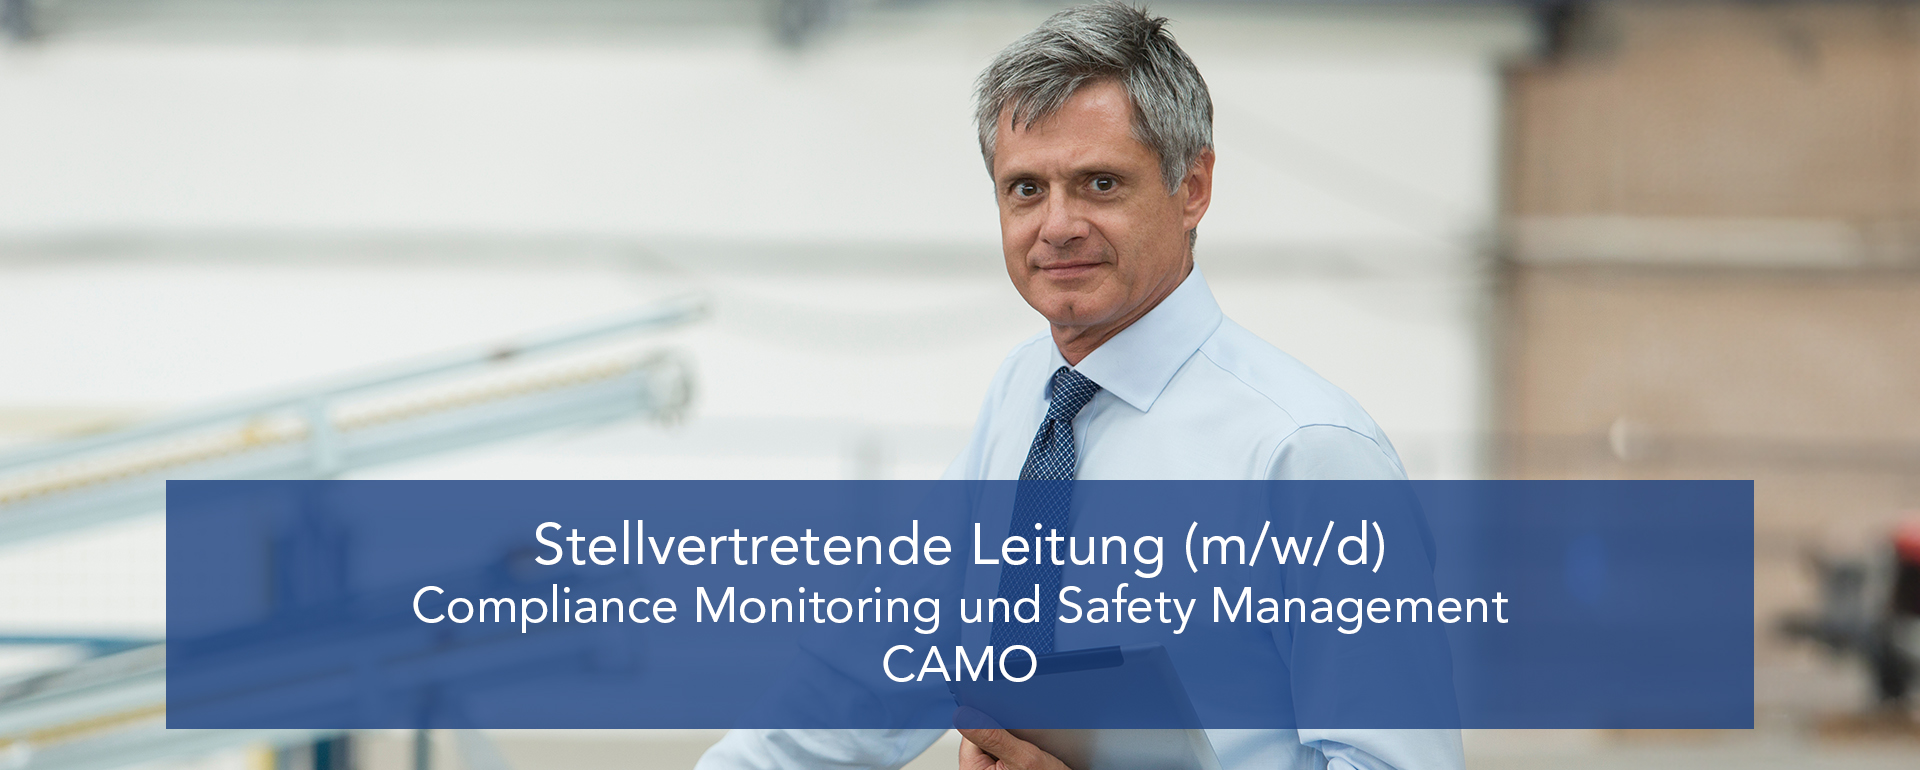 Stellvertretende Leitung (m/w/d) Compliance Monitoring und Safety Management – CAMO